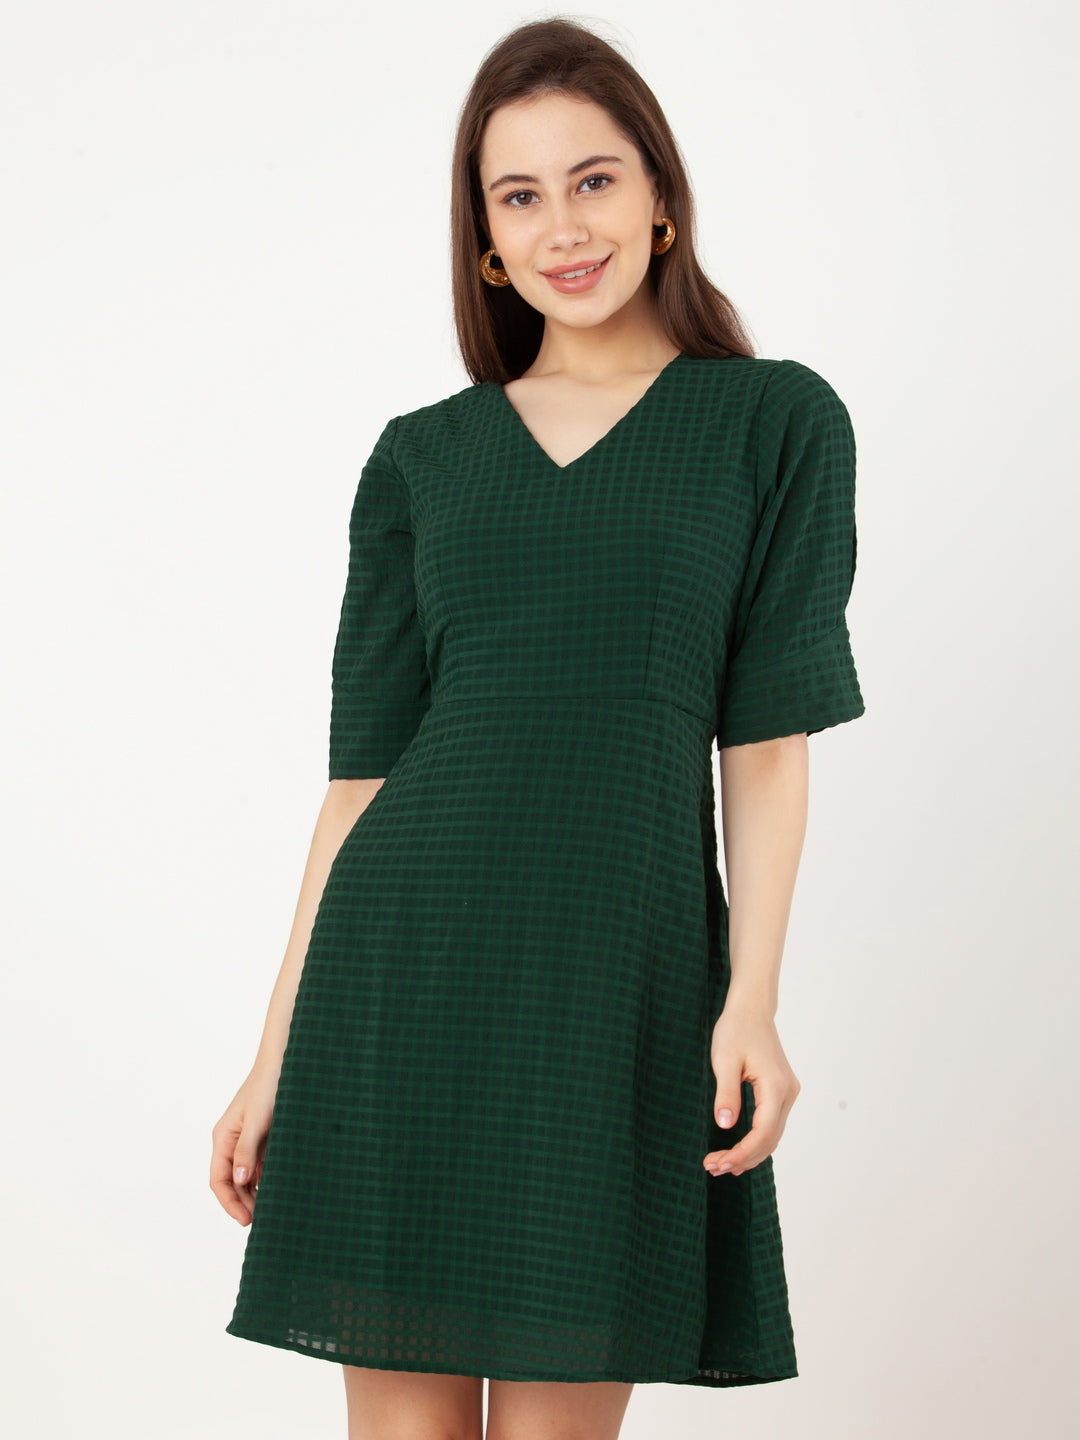 Green_Checks_A-Line_Short_Dress_2